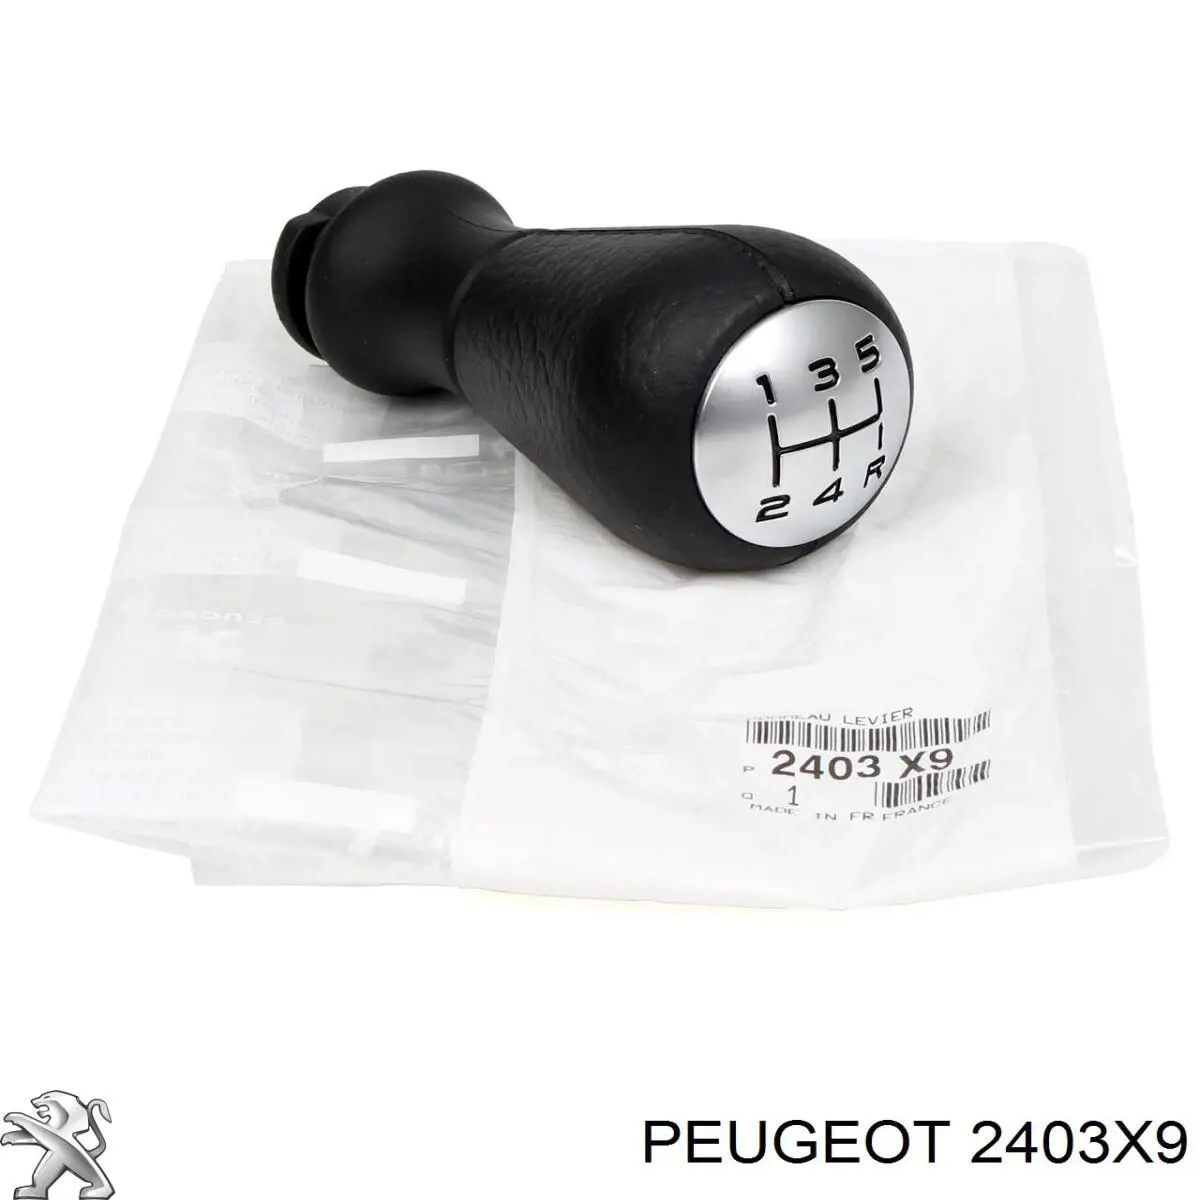 00002403X9 Peugeot/Citroen рукоятка рычага кпп